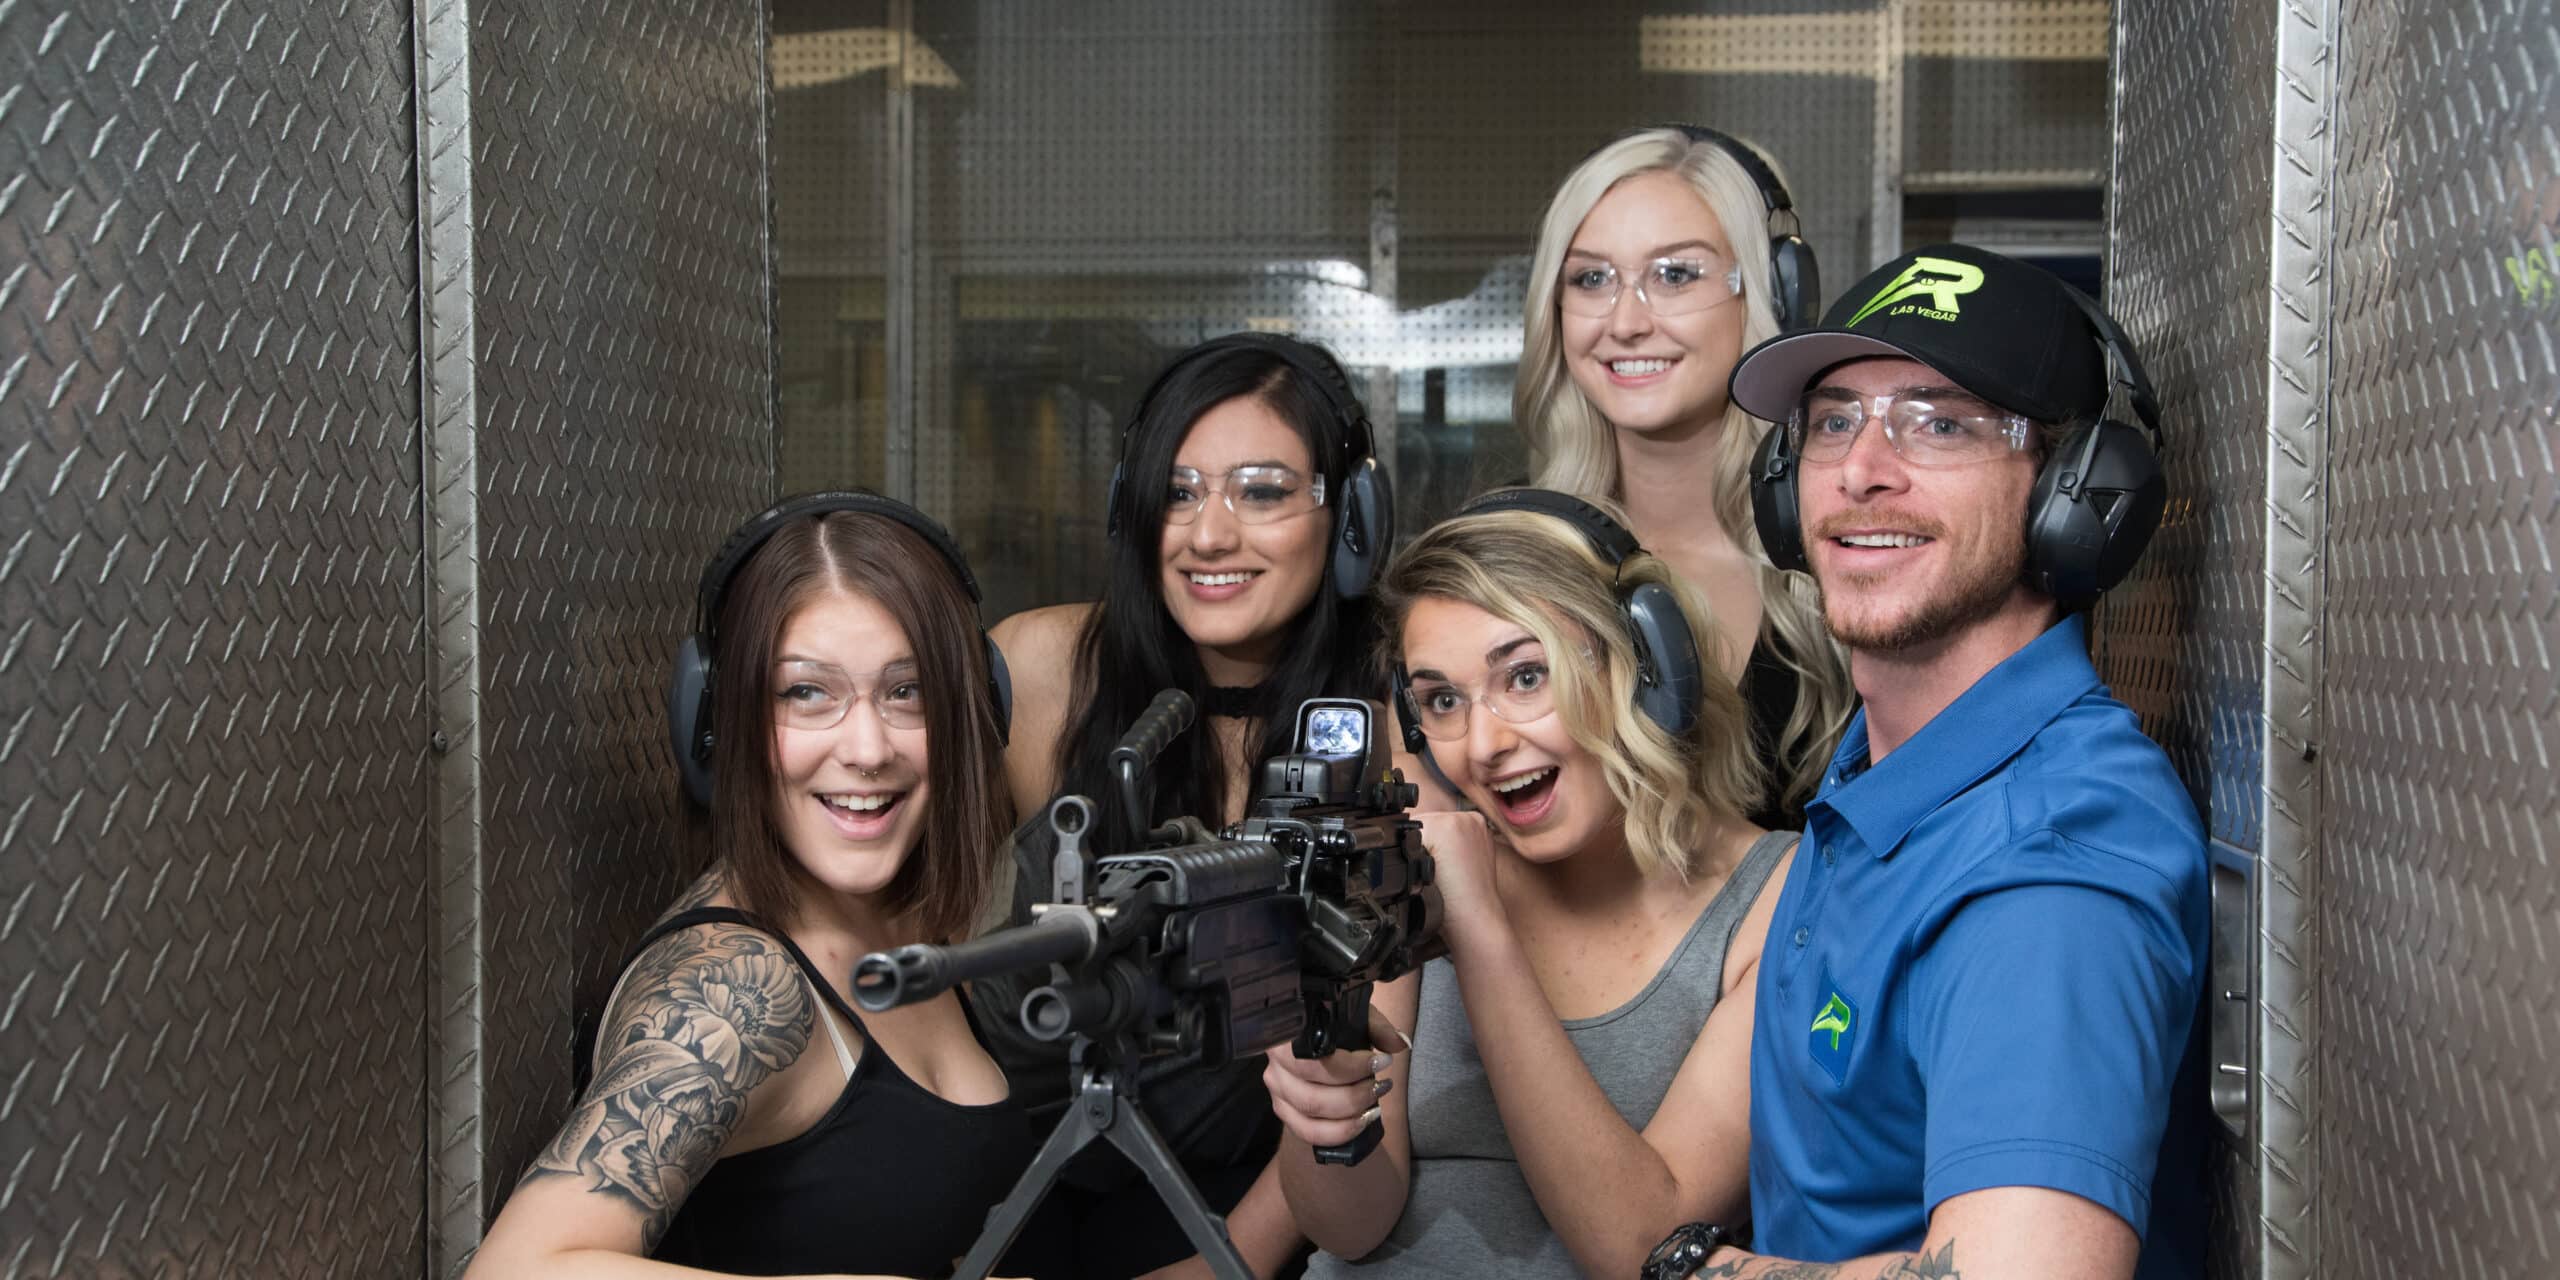 An instructor teaching 4 women on shooting a gun.